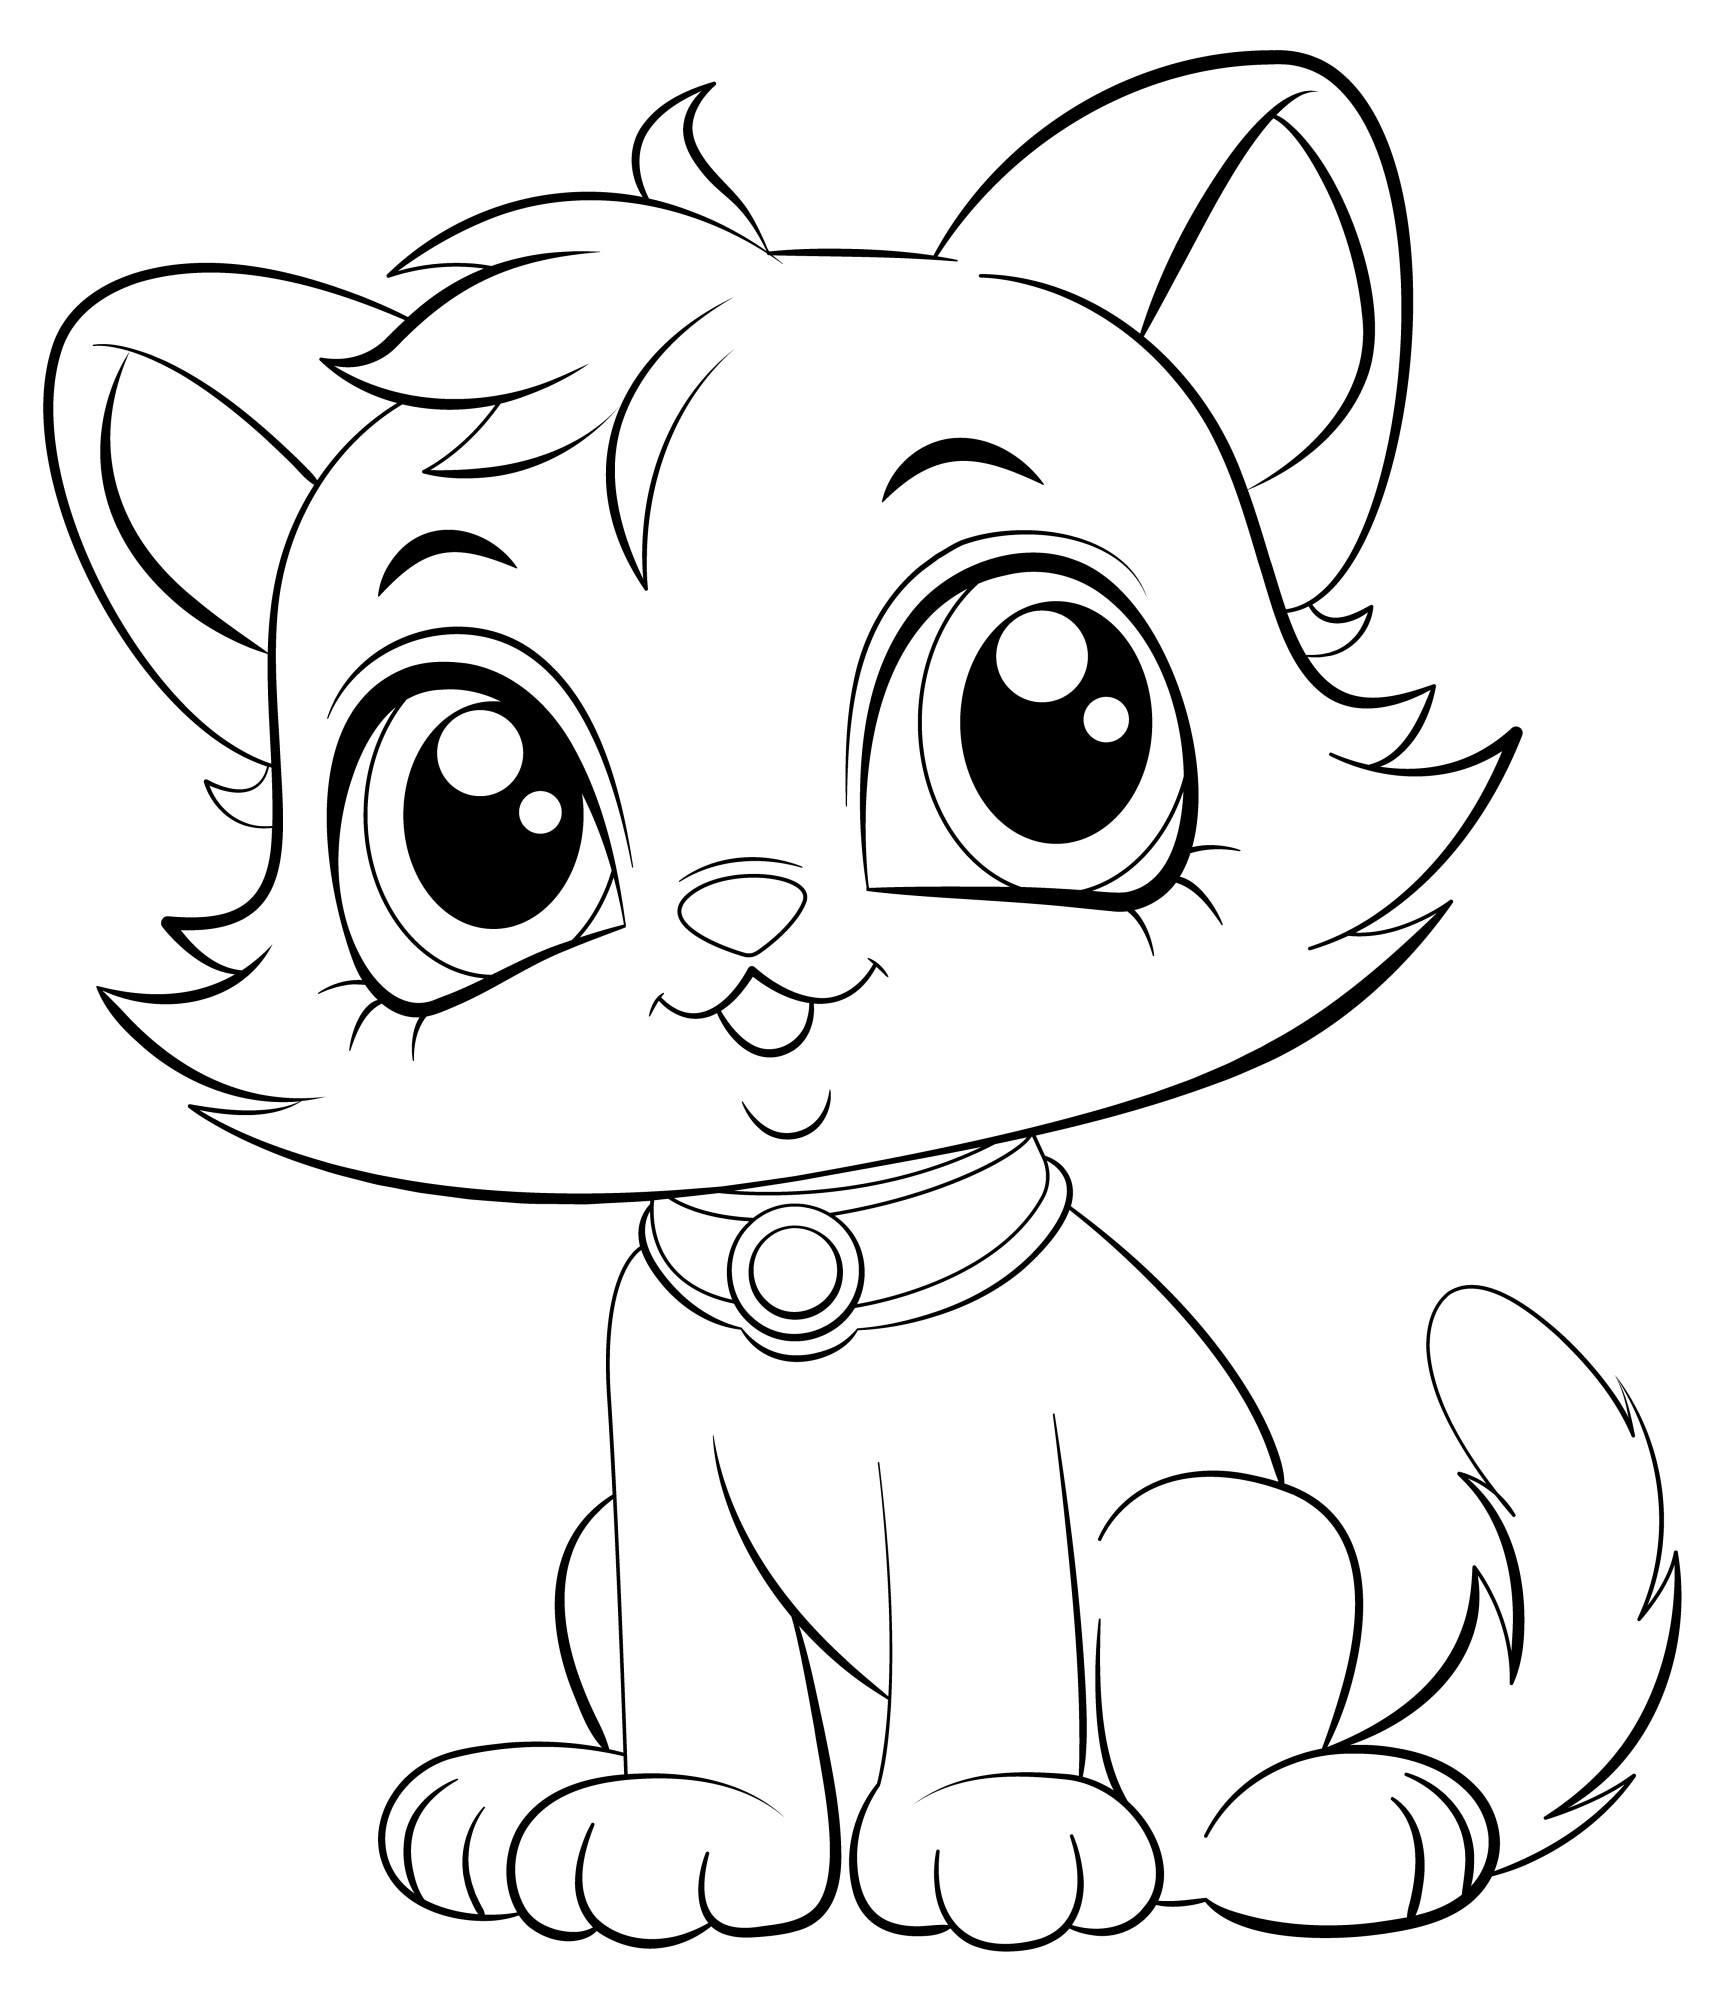 Раскраска для детей: контур котенка с большими глазами